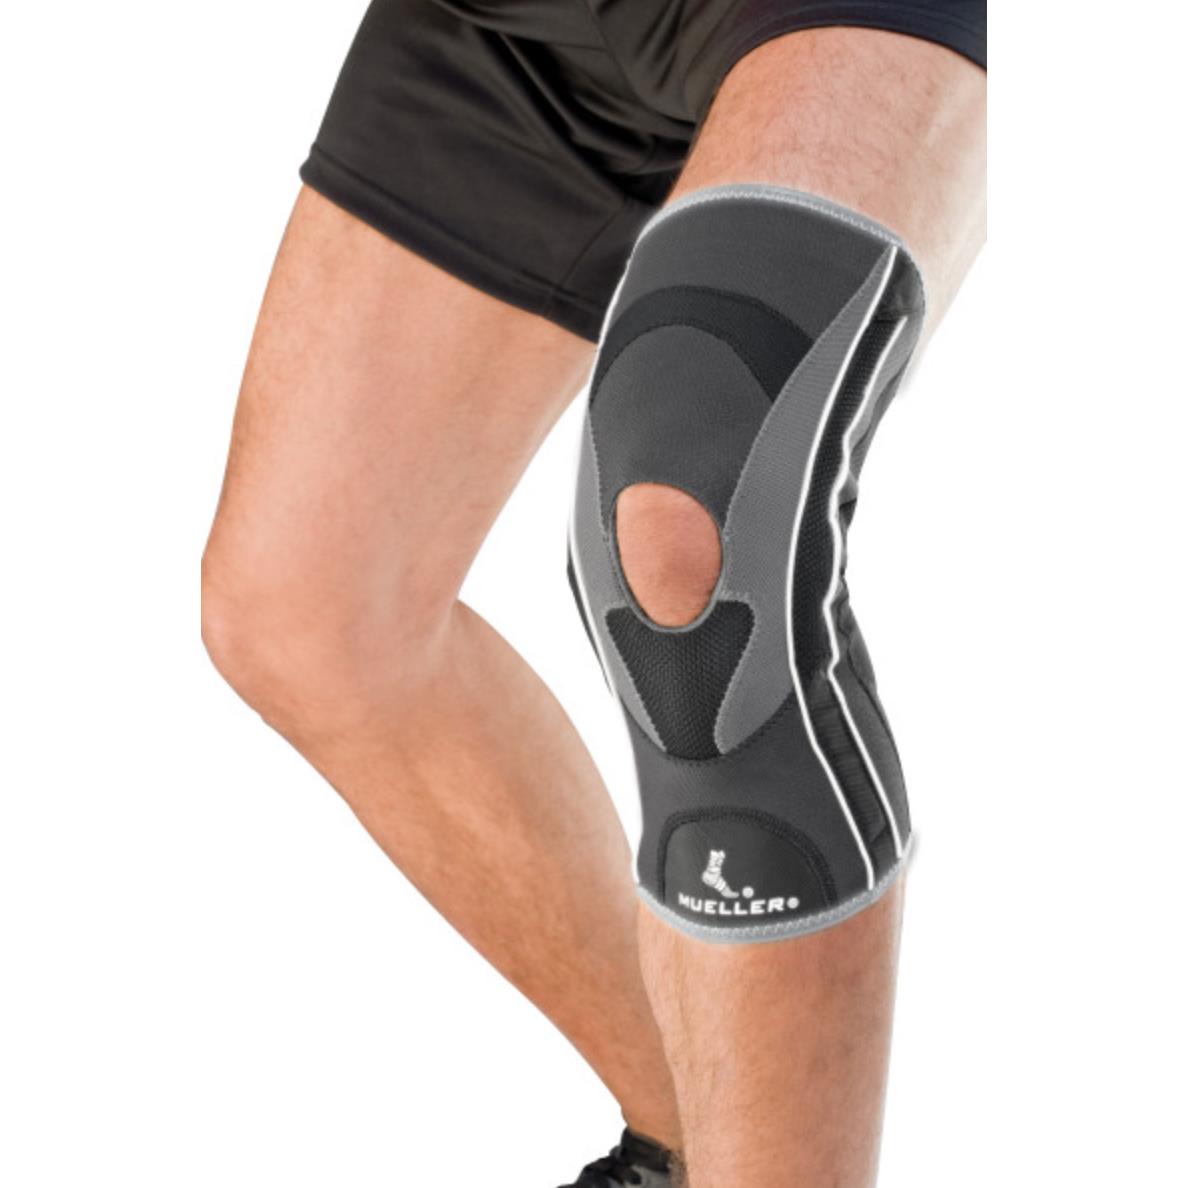 Mueller Sports Medicine HG80 Premium Knee Stablizer